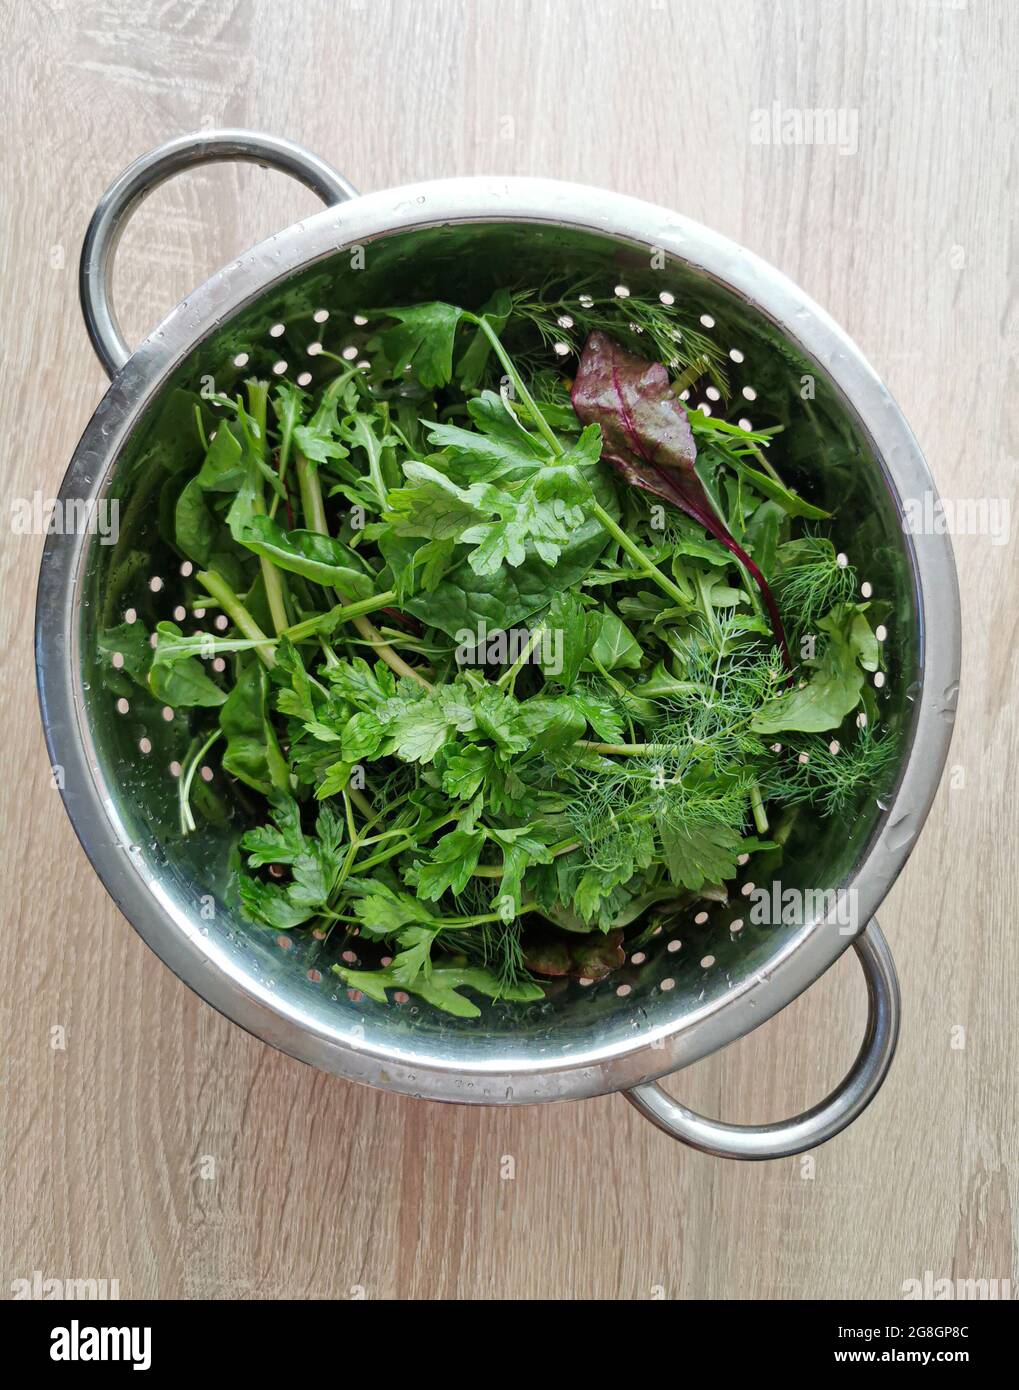 Foglie di spinaci verdi, prezzemolo, aneto, foglie di barbabietole appena lavate Foto Stock